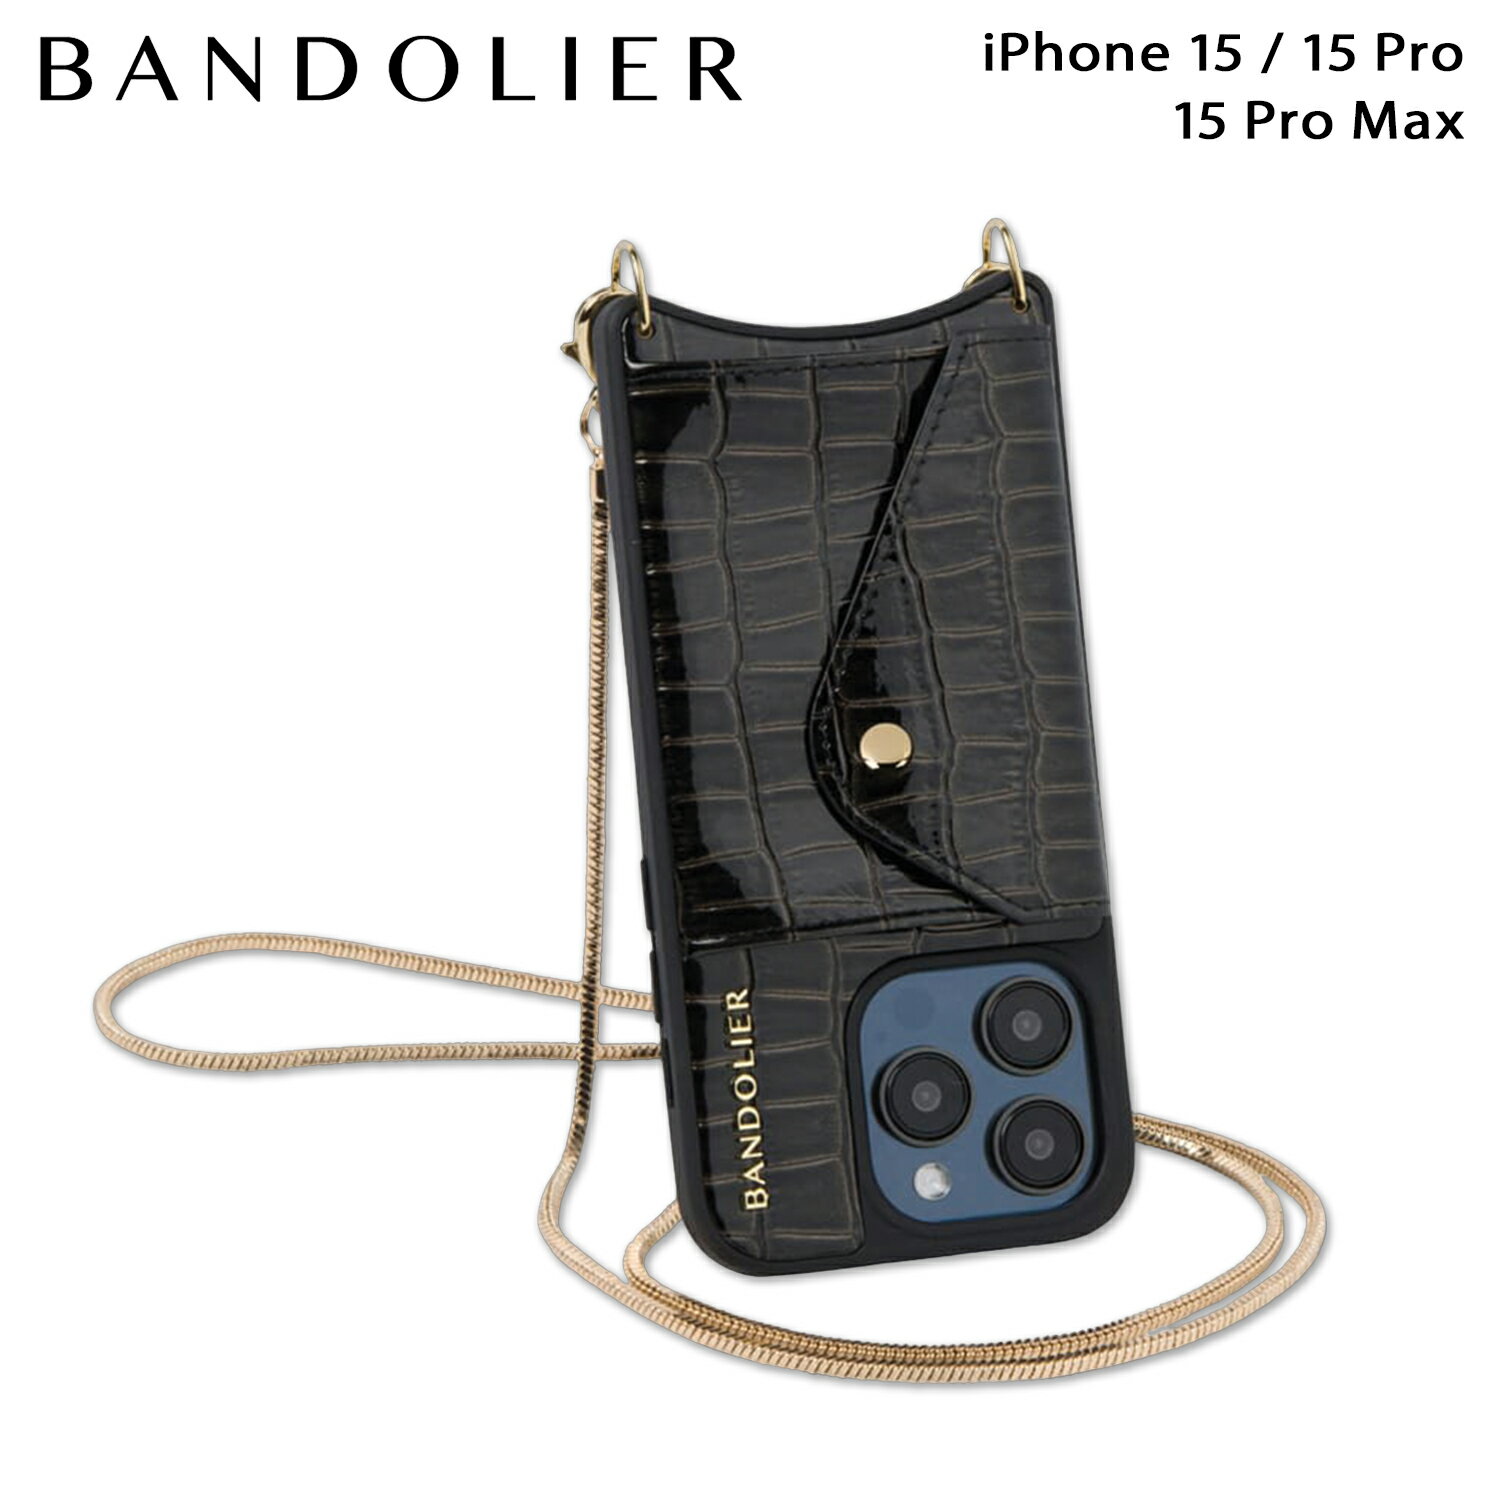 BANDOLIER GIA CRYSTAL BANDOLET SET バンドリヤー iPhone 15 15Pro iPhone 15 Pro Max スマホケース ストラップ バンドレット セット スマホショルダー ジア クリスタル メンズ レディース ブラック 黒 14GIK